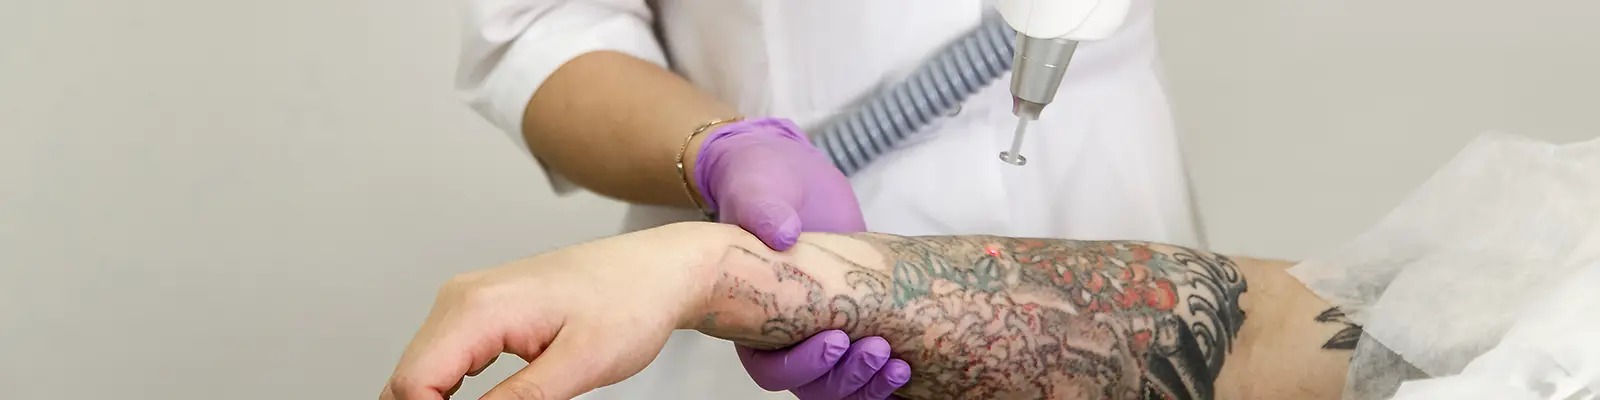  Tattoo Removal In Delhi